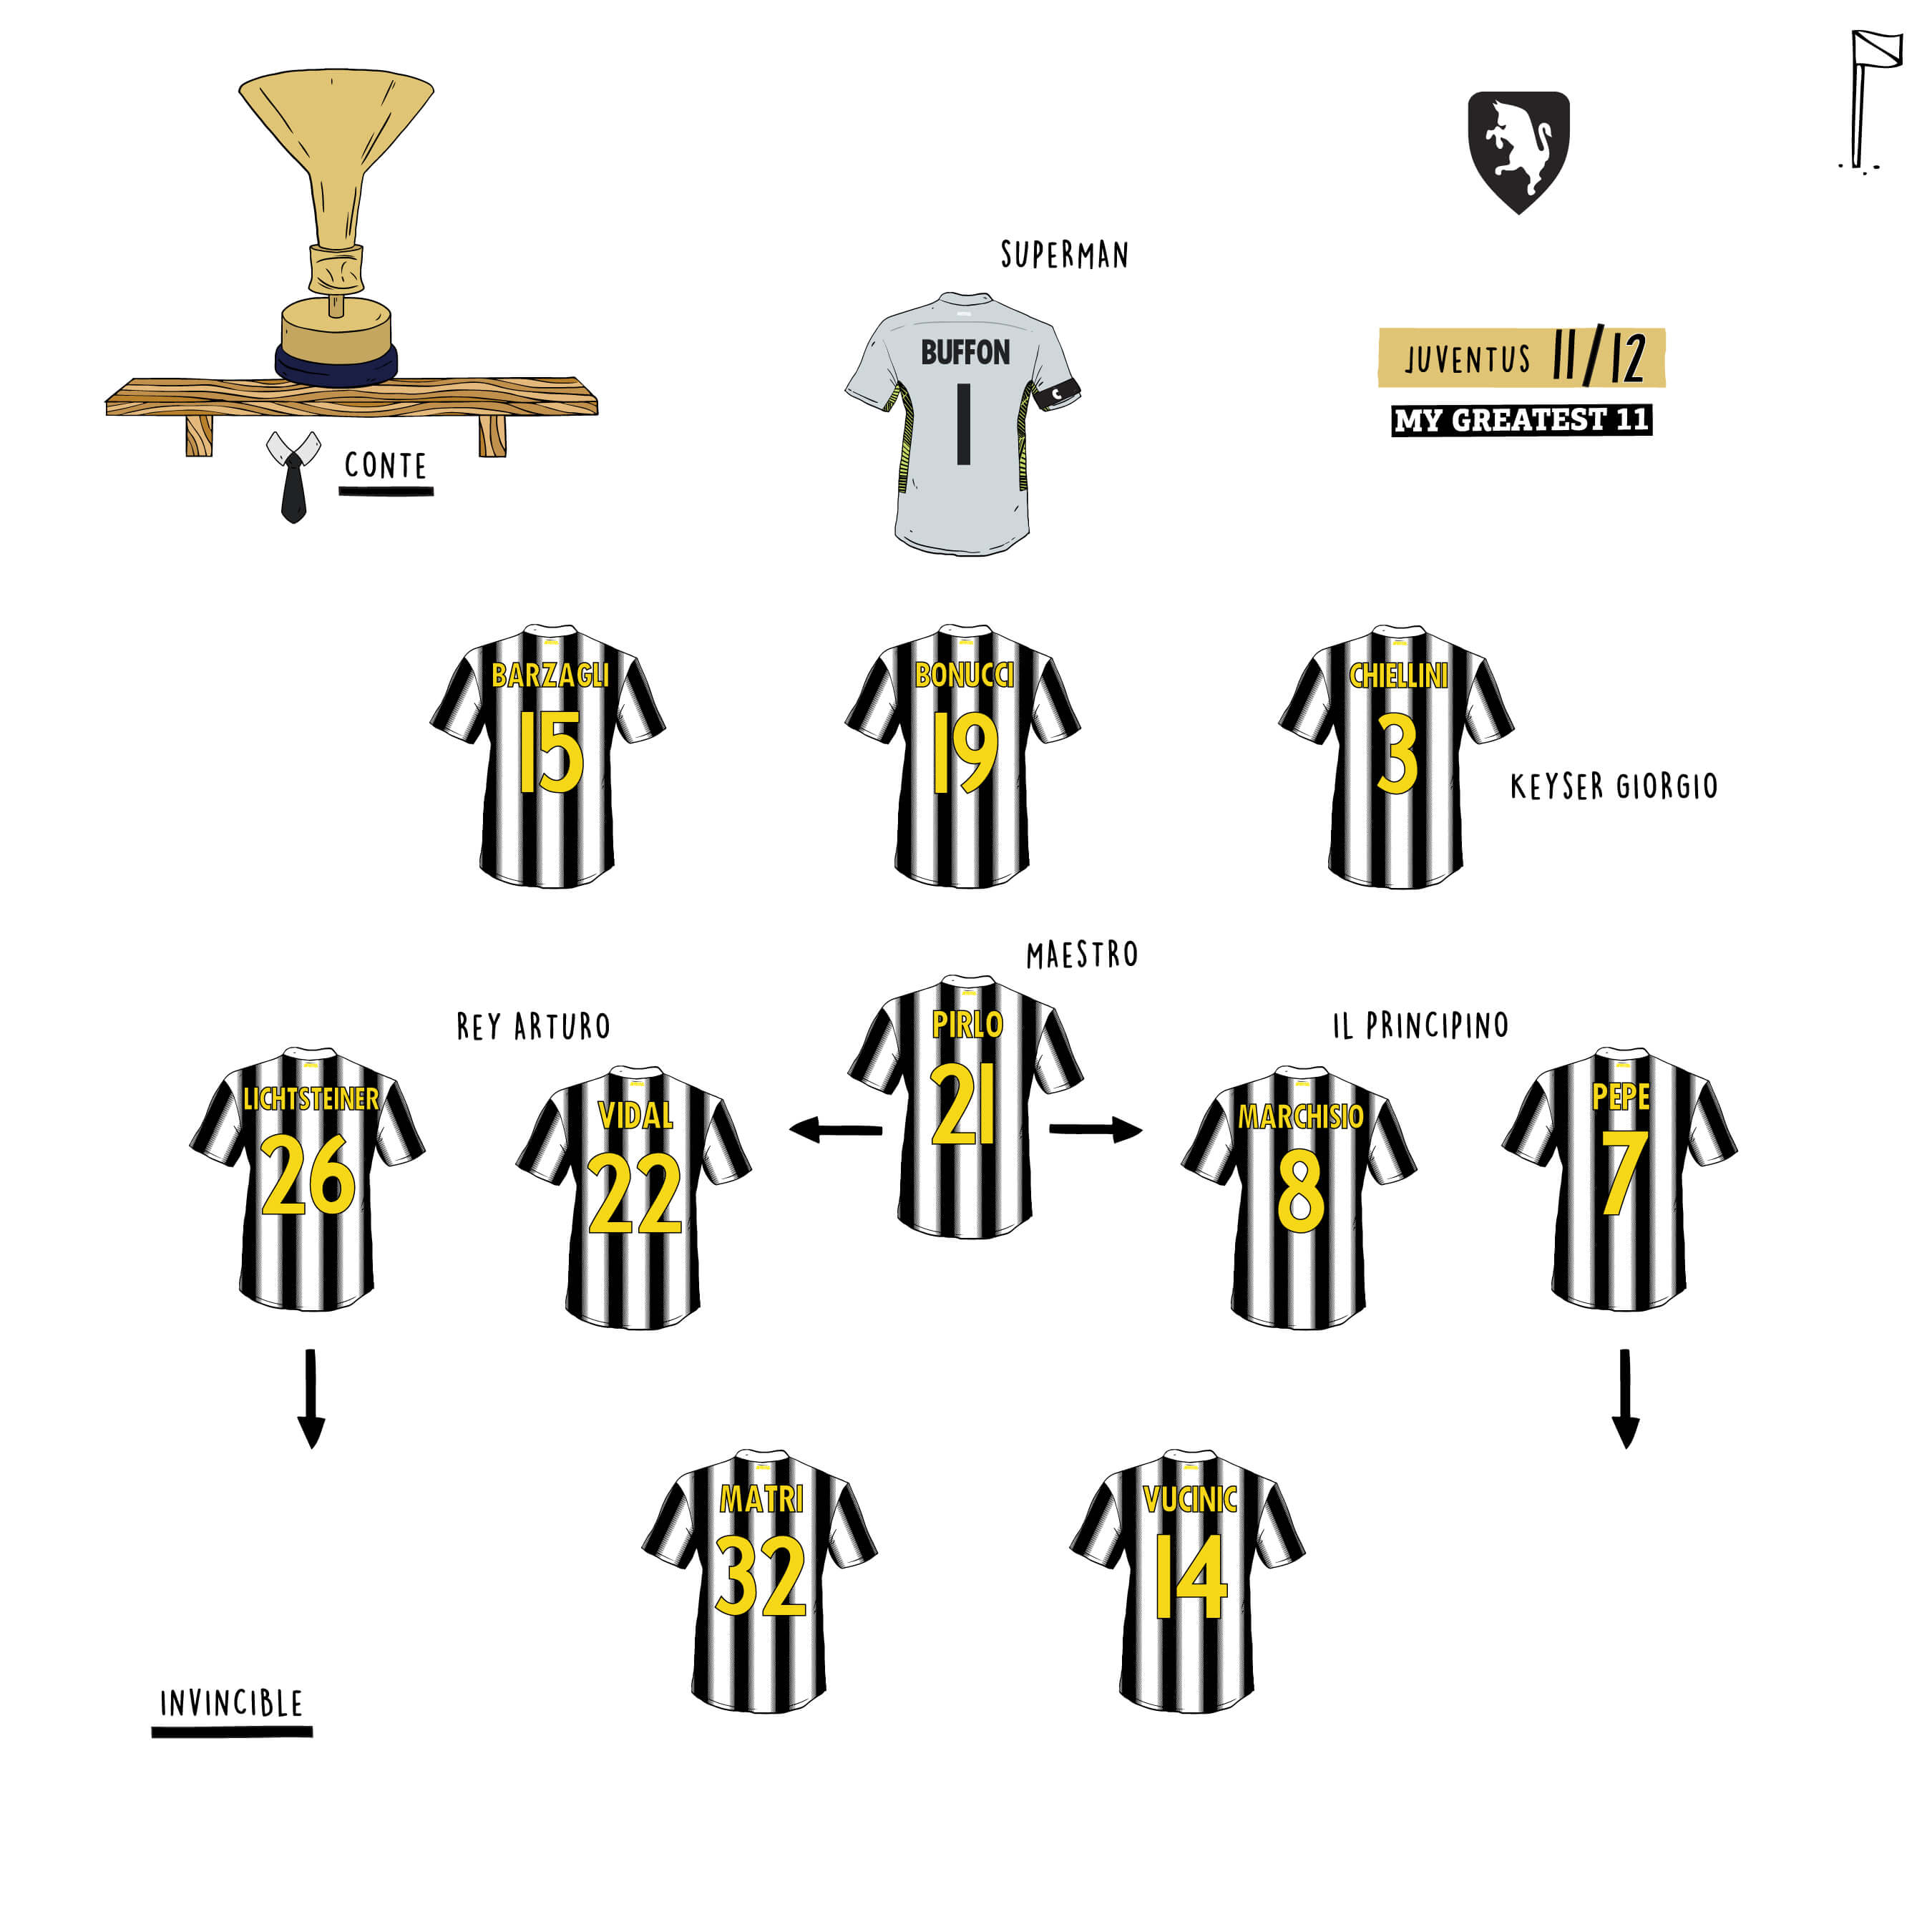 Juventus 11/12 Team